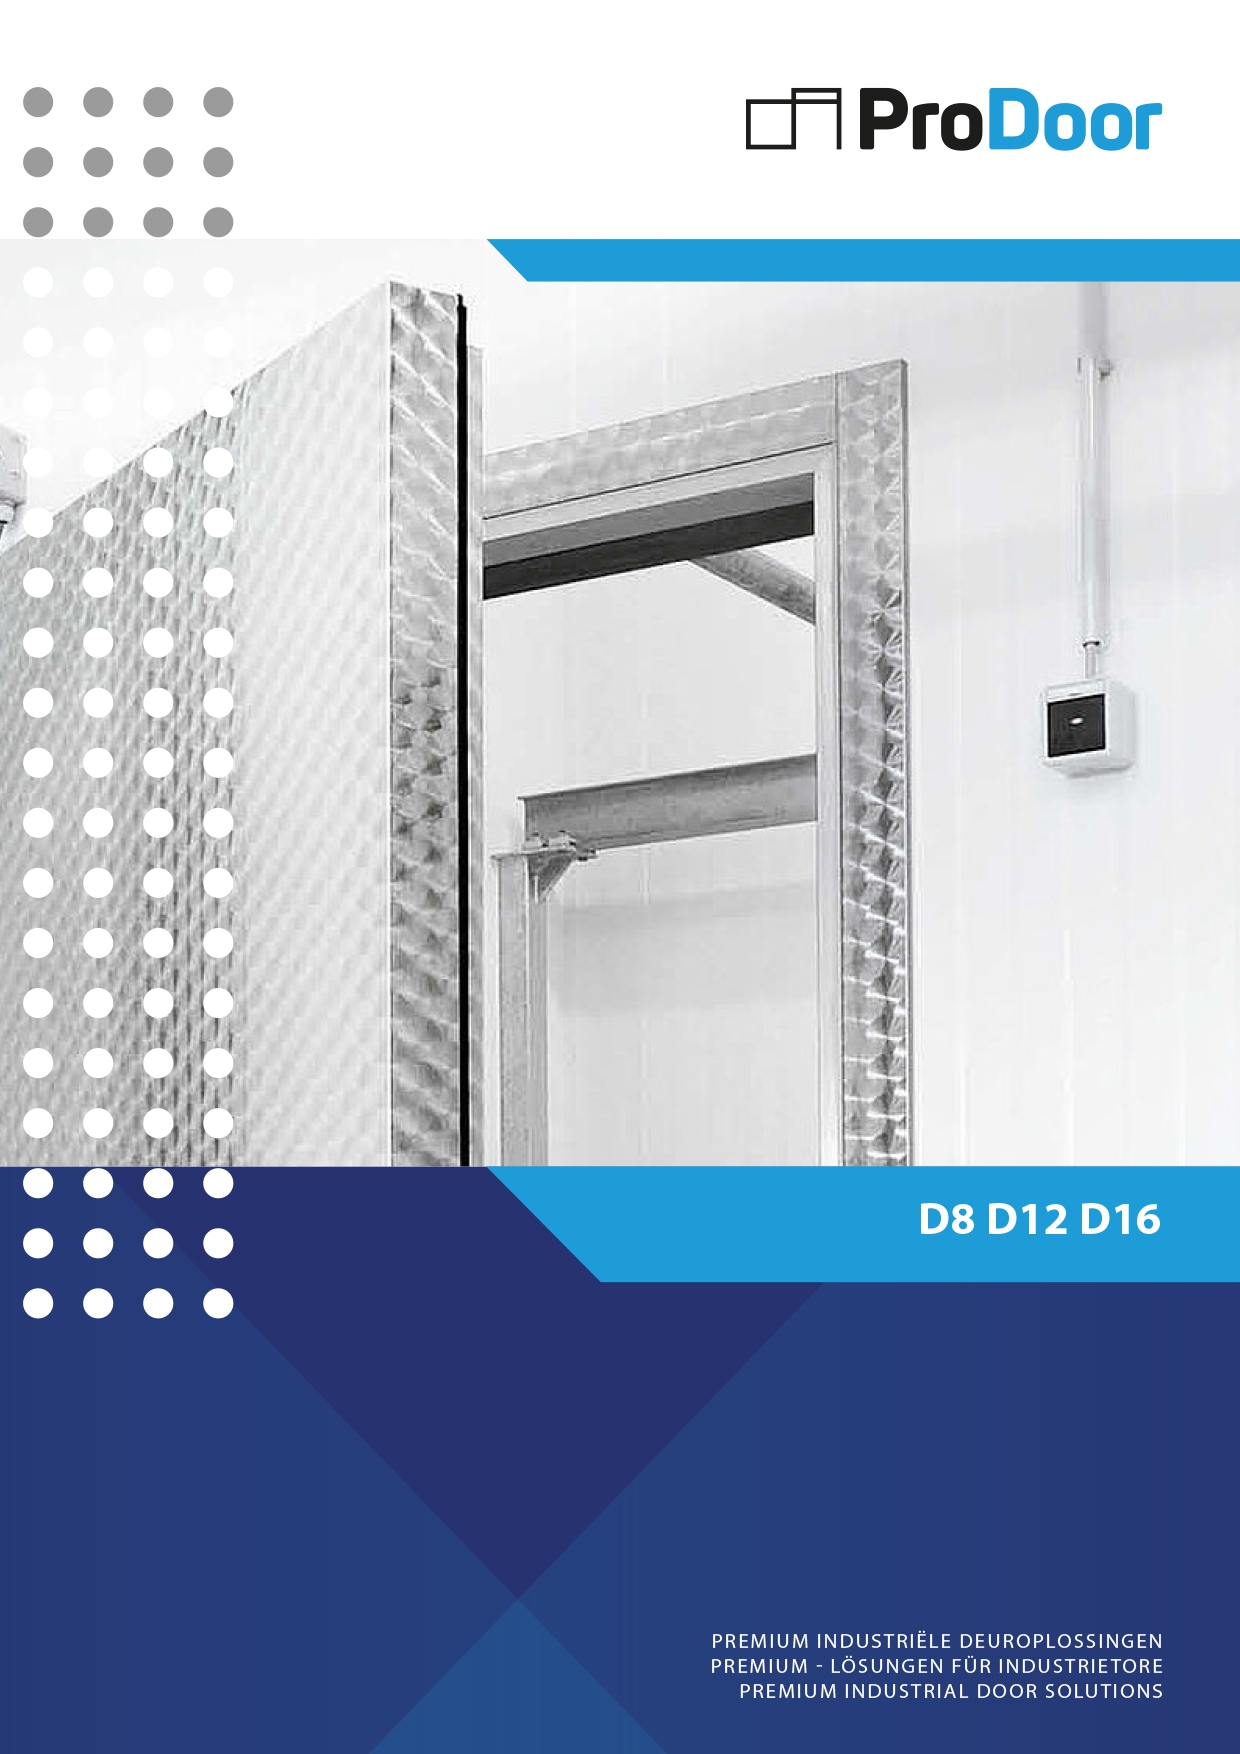 921_new-prodoor-cool-it-d8-d12-d16-hinged-doors-for-chillers-freezers-and-shock-freezers-deutsch-english-final-1_detailpagina_20210514213647.jpg